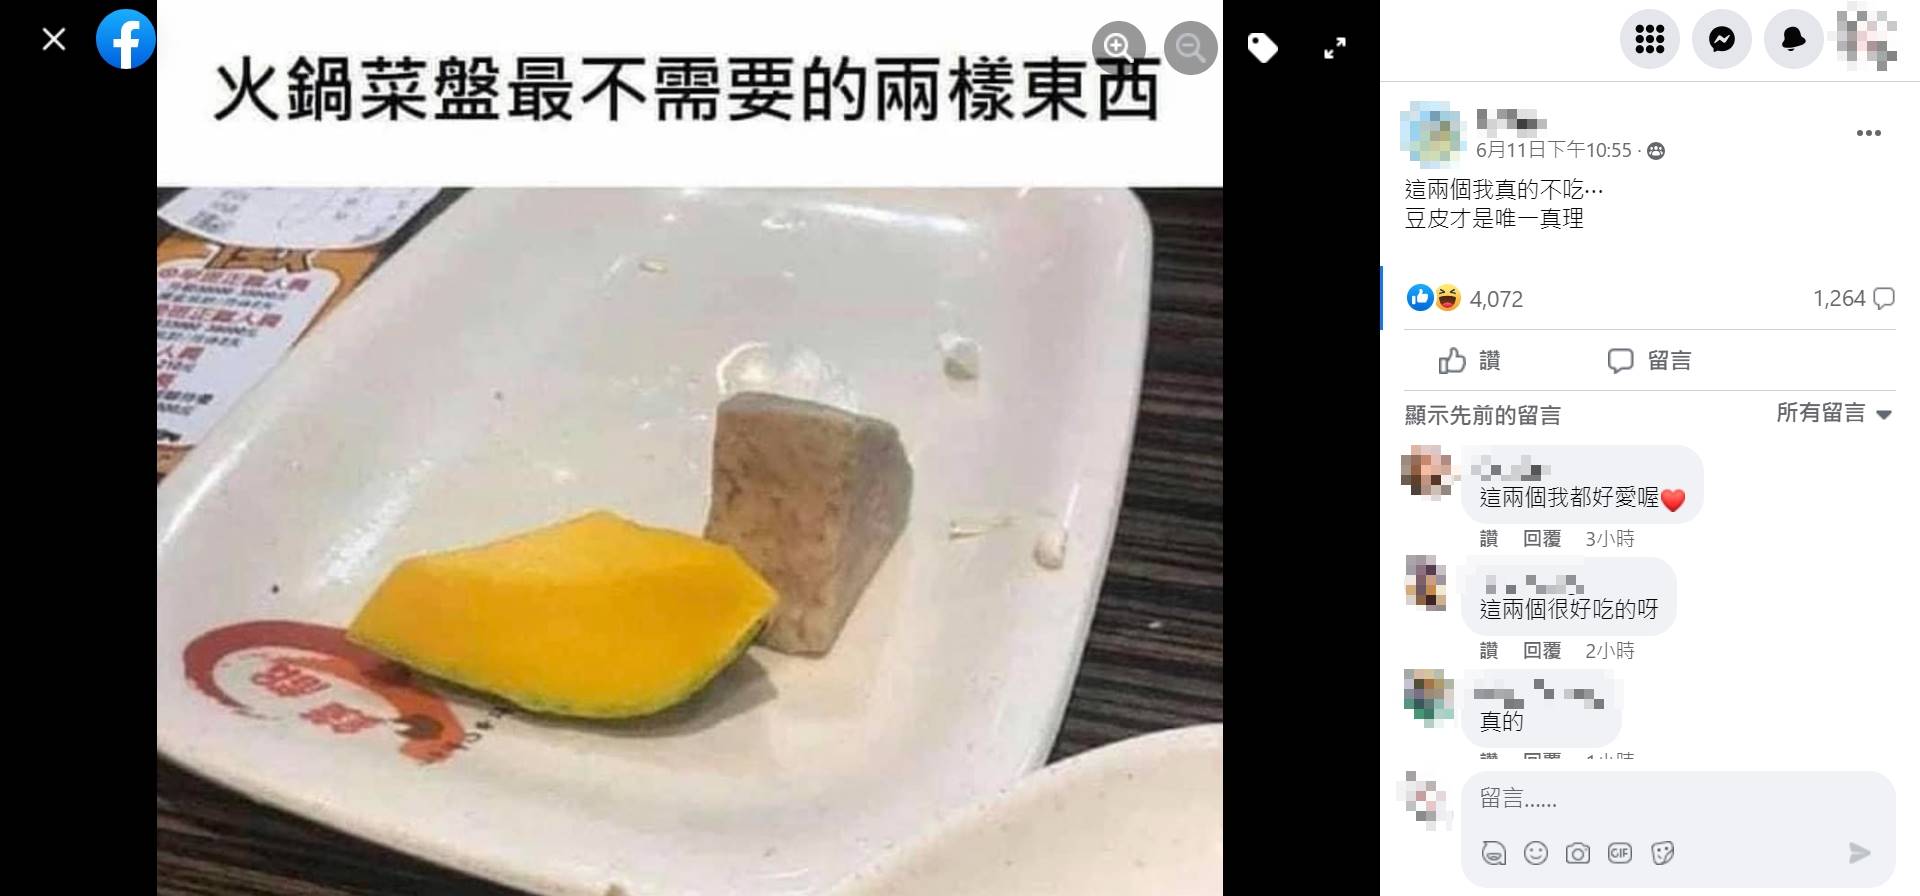 網友發文表示芋頭和南瓜是「火鍋菜盤最不需要的兩樣東西」